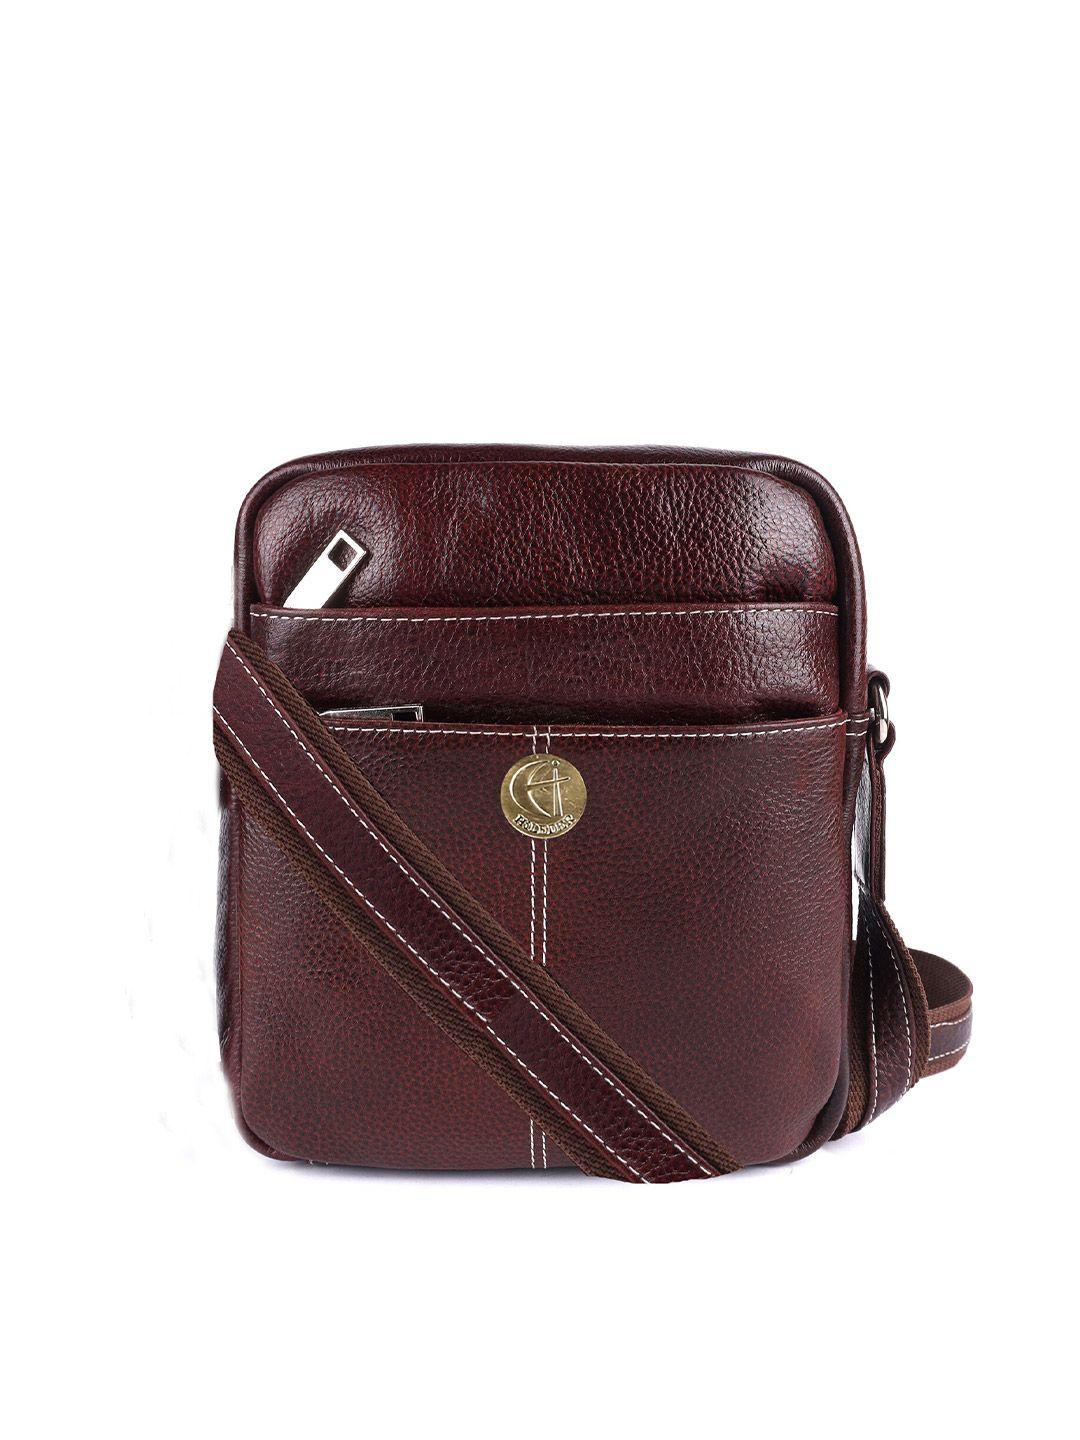 hileder unisex brown textured messenger bag